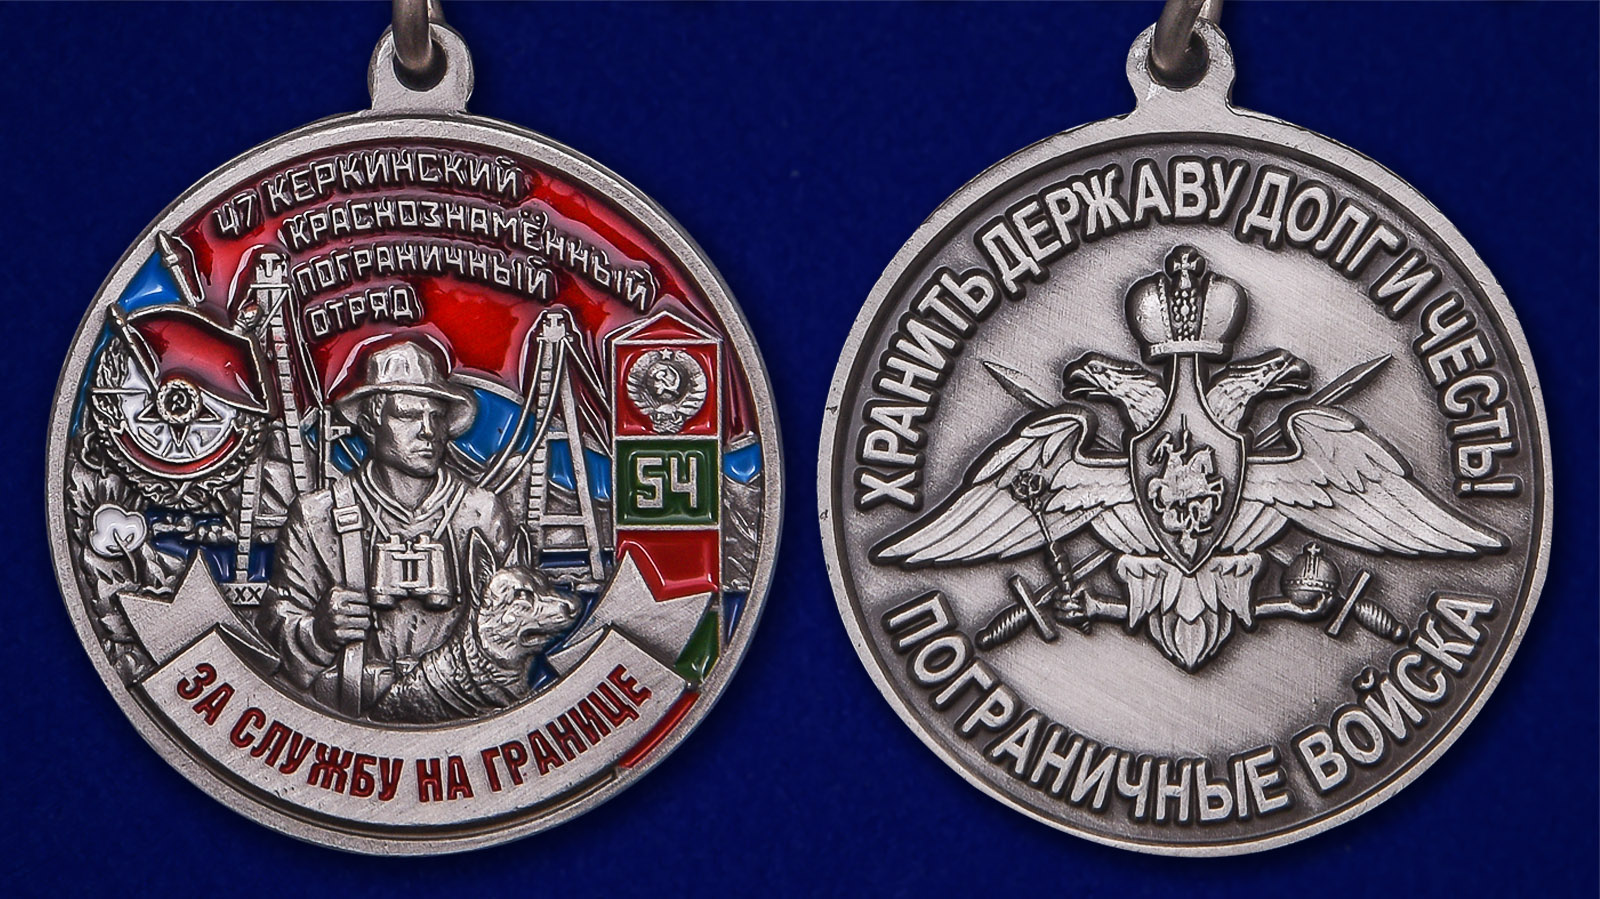 Медаль "За службу на границе" (47 Керкинский Пограничный отряд) - аверс и реверс